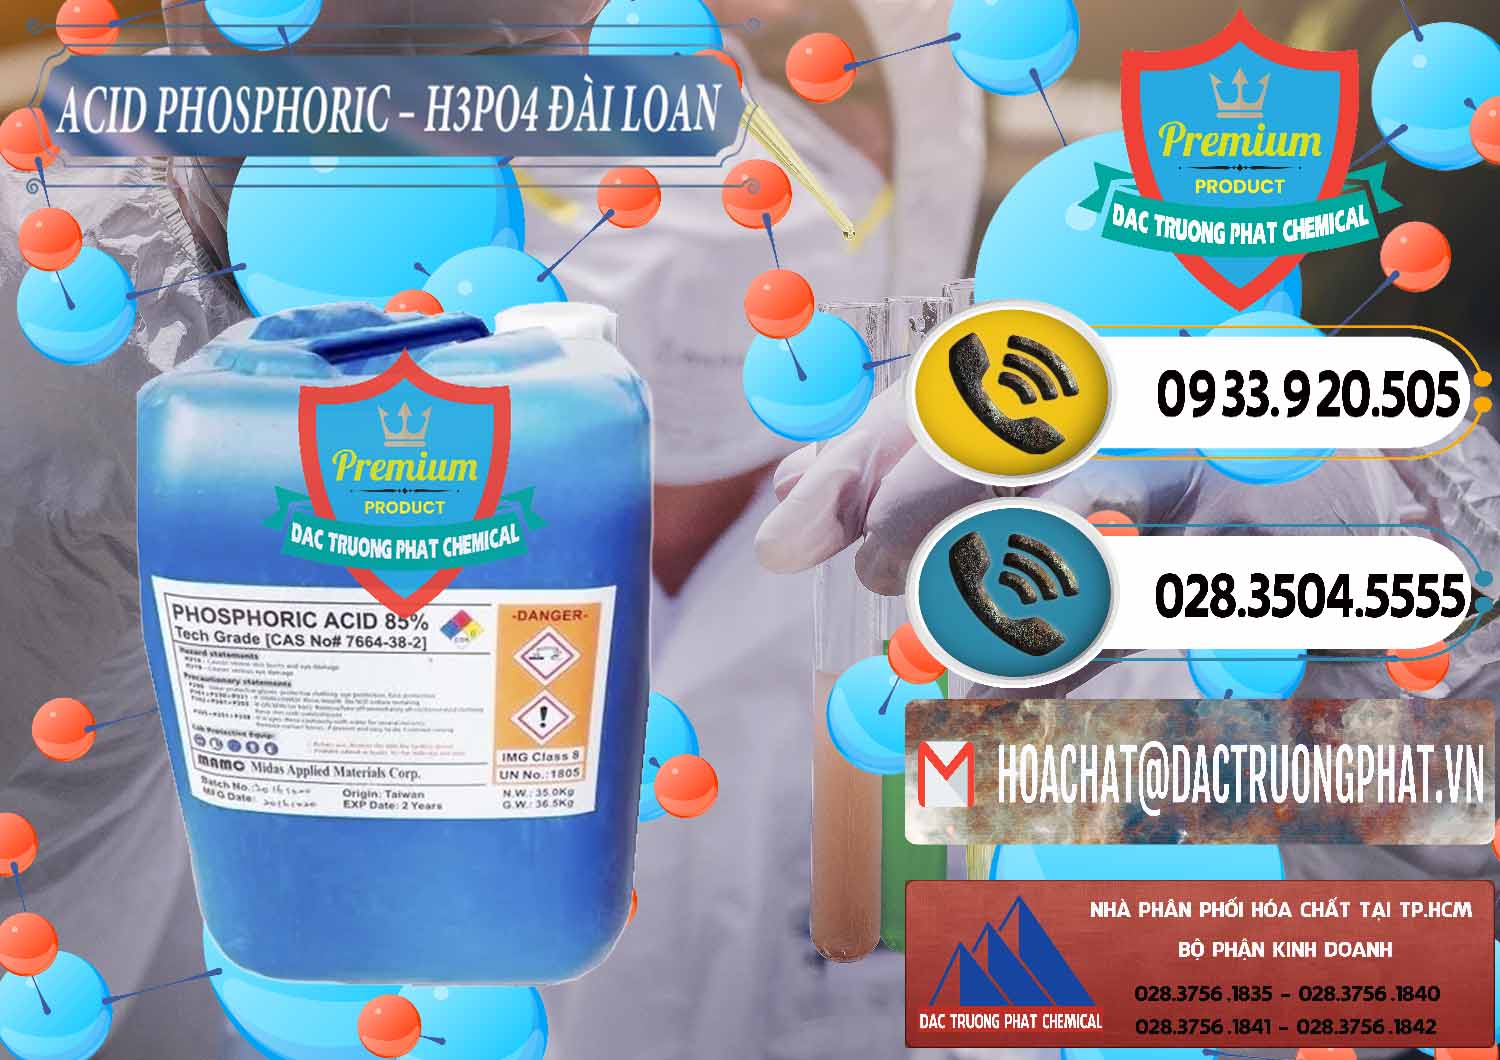 Cty bán _ phân phối Axit Phosphoric - Acid Phosphoric H3PO4 85% Đài Loan Taiwan - 0351 - Cty cung ứng & phân phối hóa chất tại TP.HCM - hoachatdetnhuom.vn